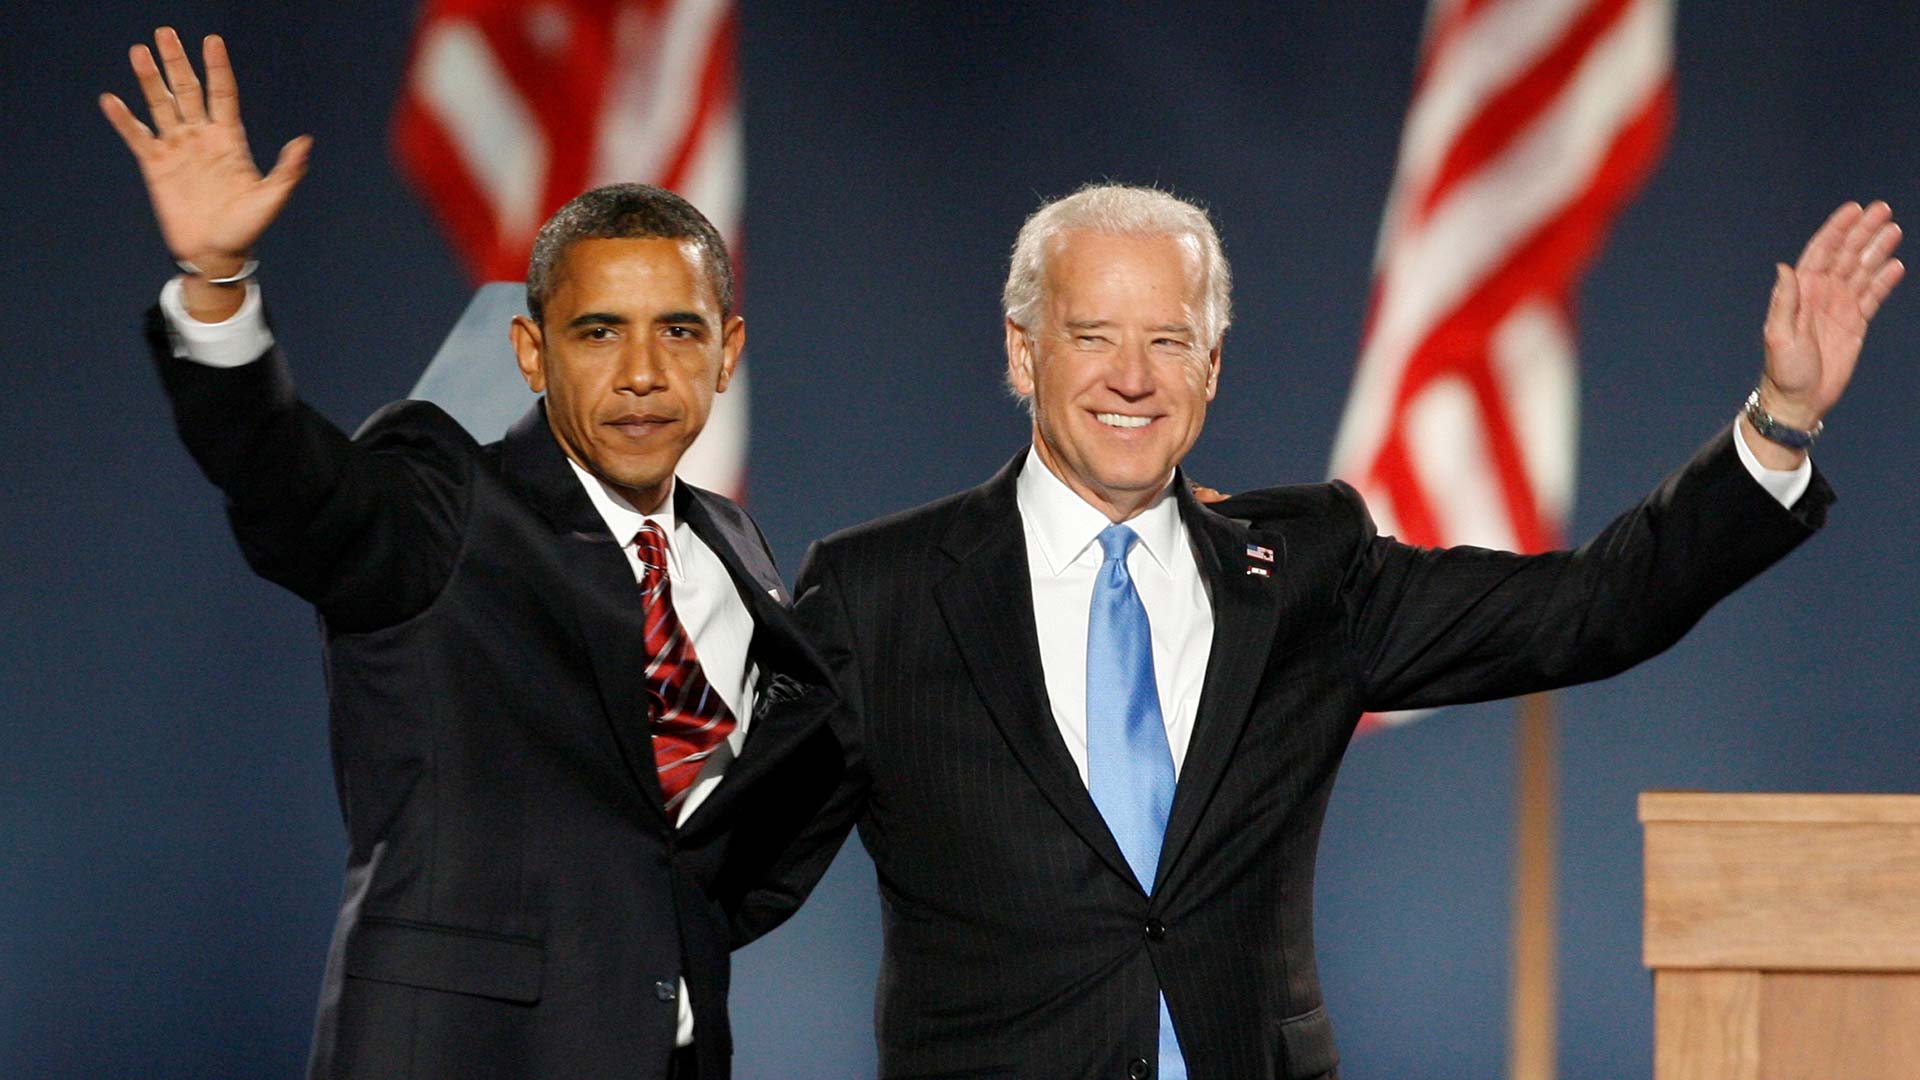 Obama apoya públicamente a Biden, capaz “de guiarnos en los tiempos más oscuros”